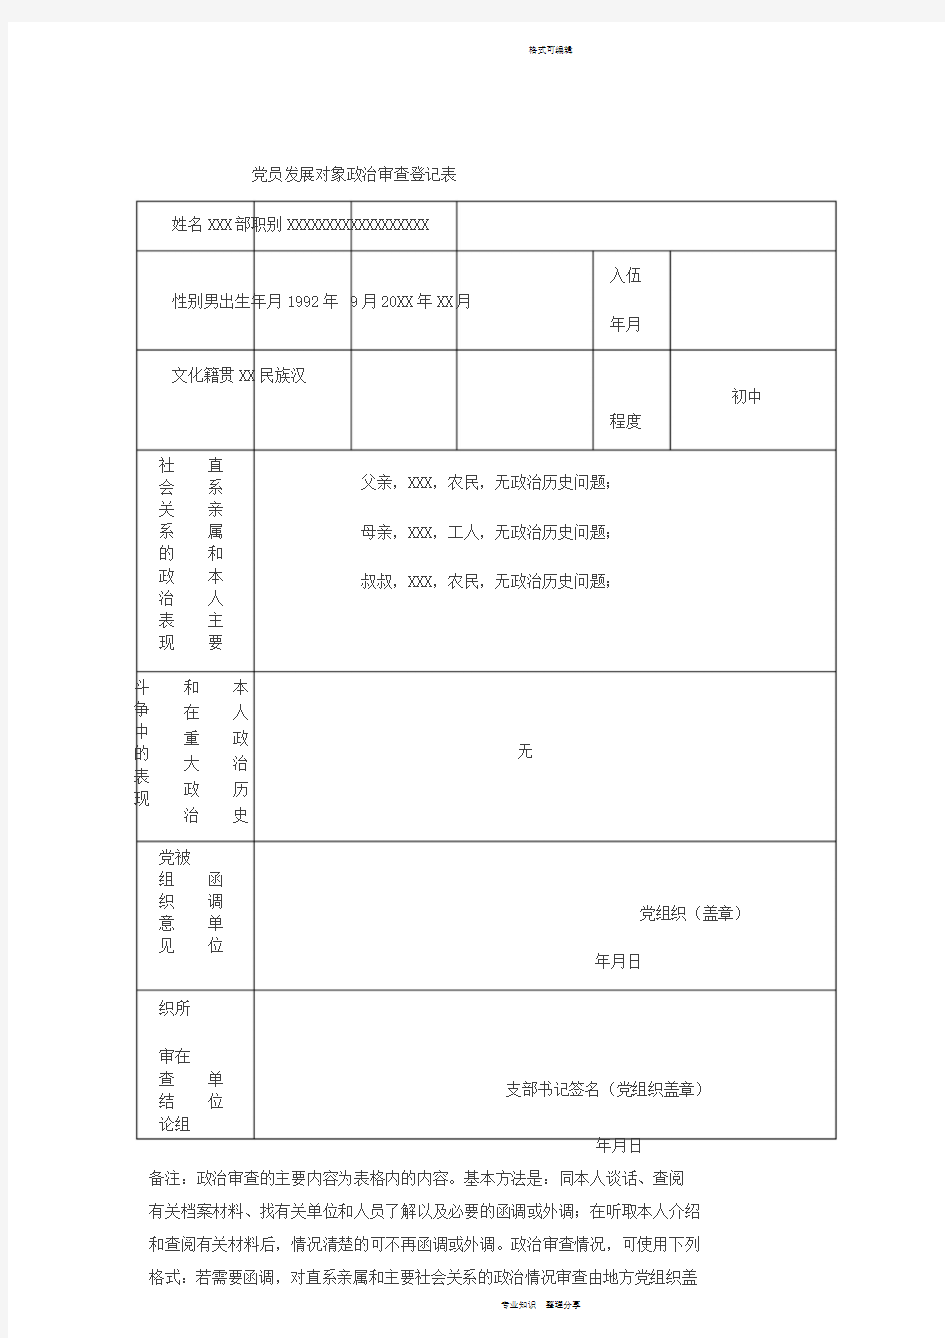 党员发展对象政治审查登记表(样表)